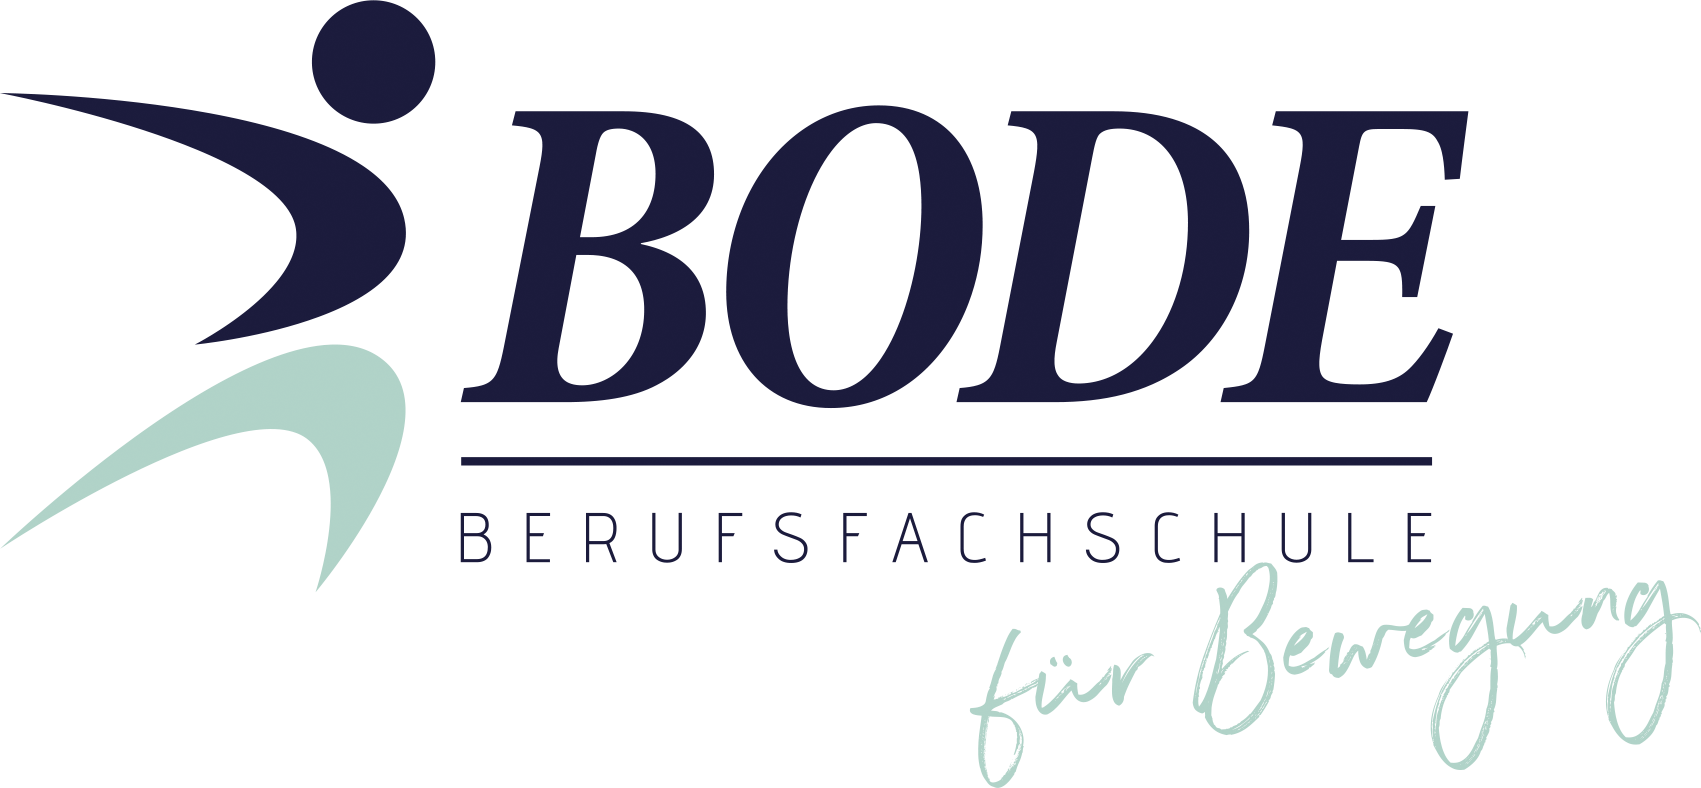 Bode-Schule München, Berufsfachschule für Gymnastik-Tanz-Sport